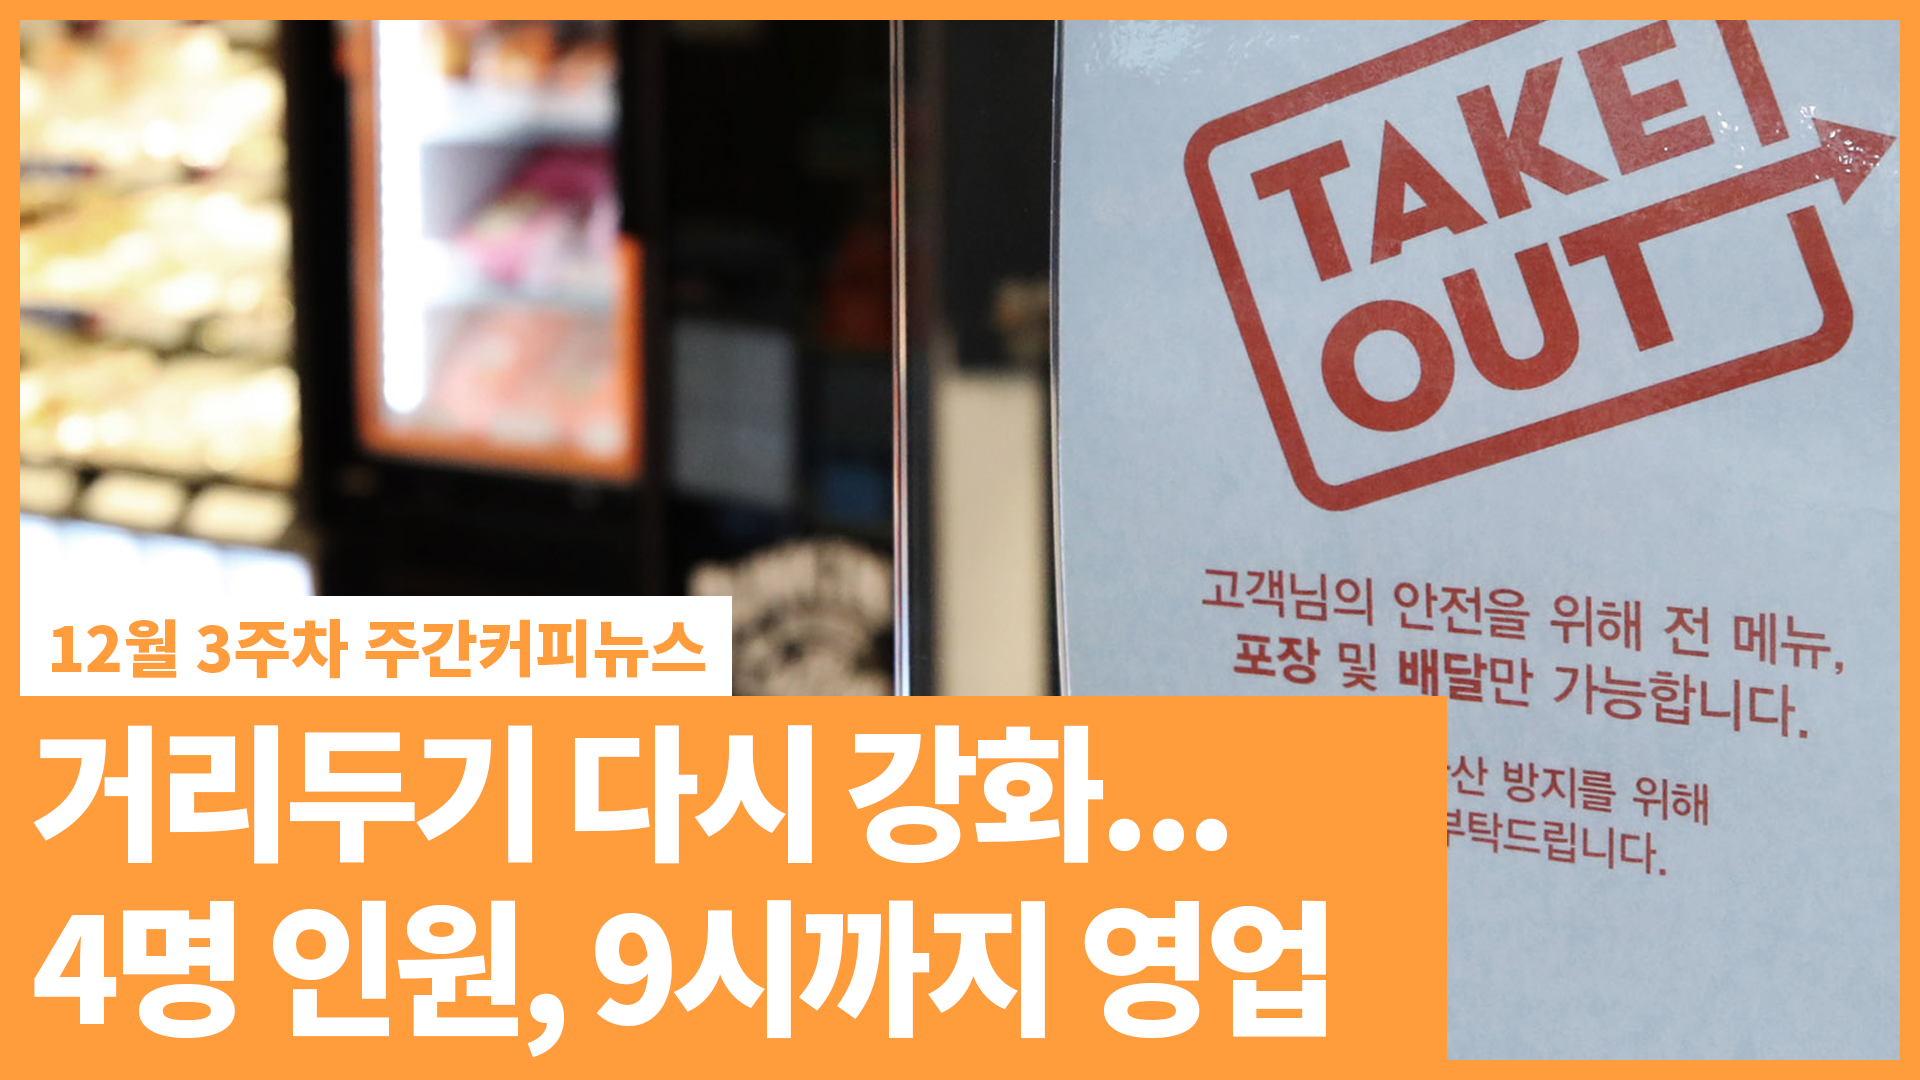 거리두기 다시 강화… 4명 인원 제한, 식당·카페 밤 9시까지 | 12월 3주차 주간커피뉴스